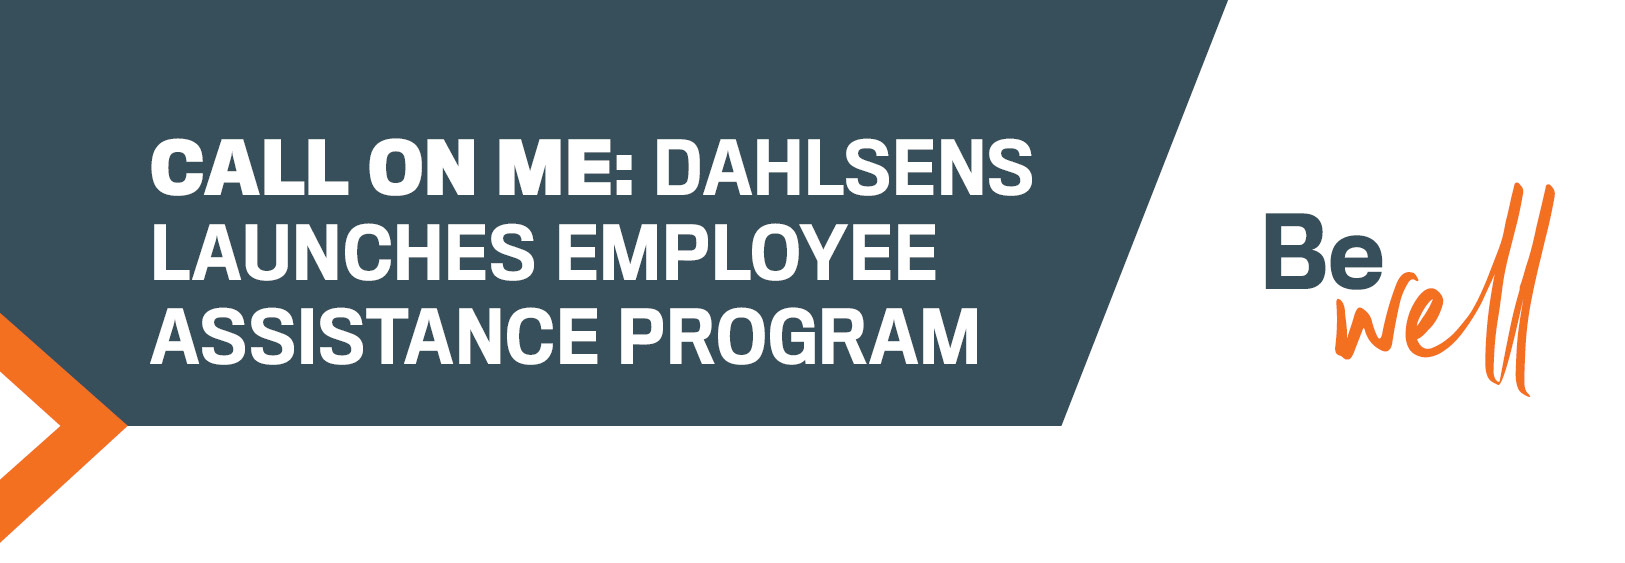 Dahlsens Launches Employee Assistance Program